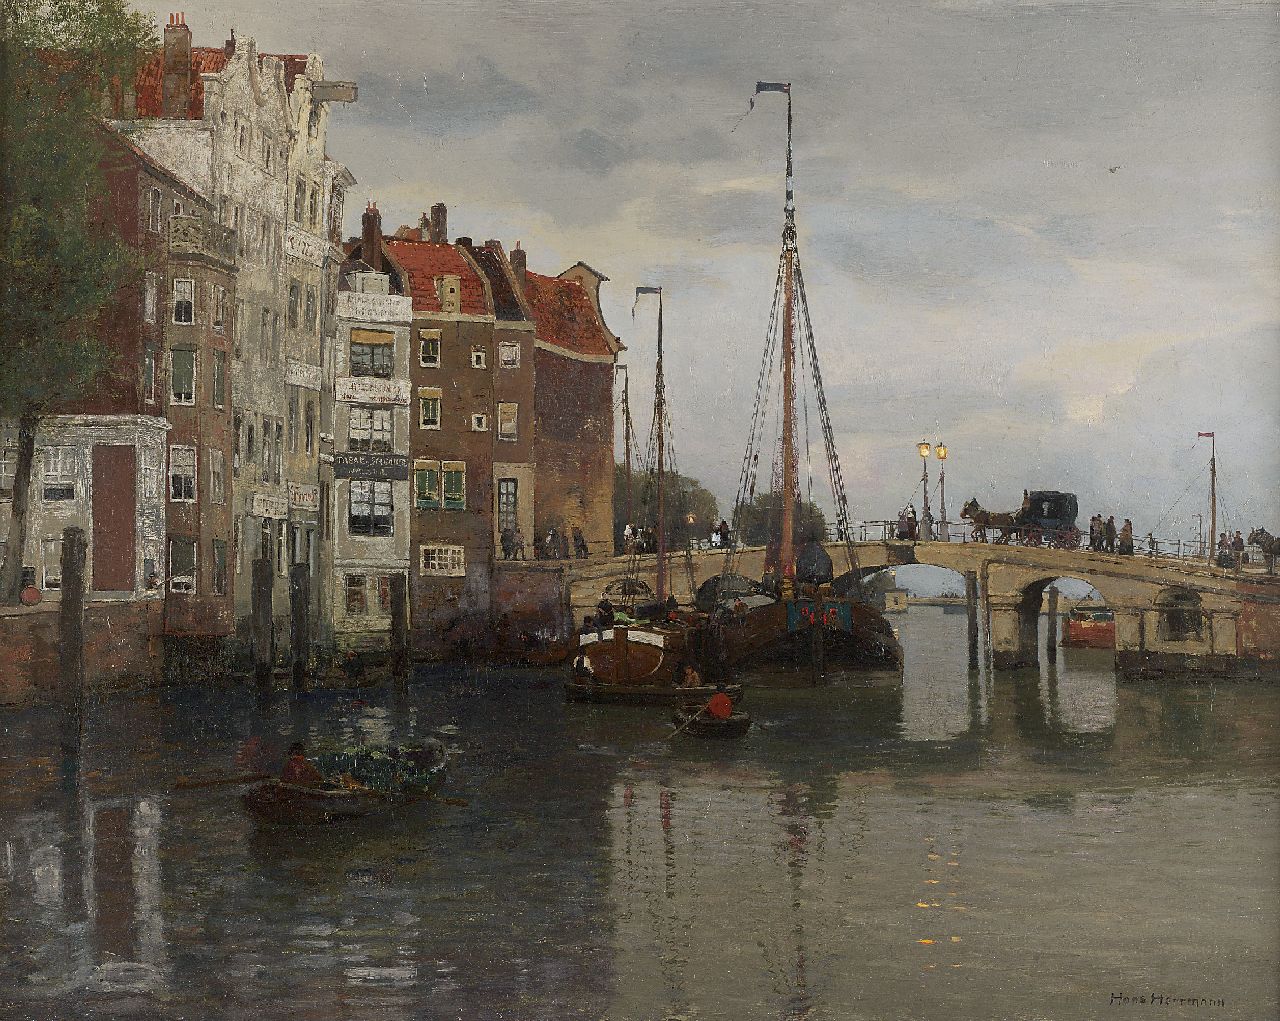 Herrmann J.E.R.  | Johann Emil Rudolf 'Hans' Herrmann, Hollands stadsgezicht met afgemeerde schepen bij een brug, olieverf op doek 49,0 x 60,0 cm, gesigneerd rechtsonder